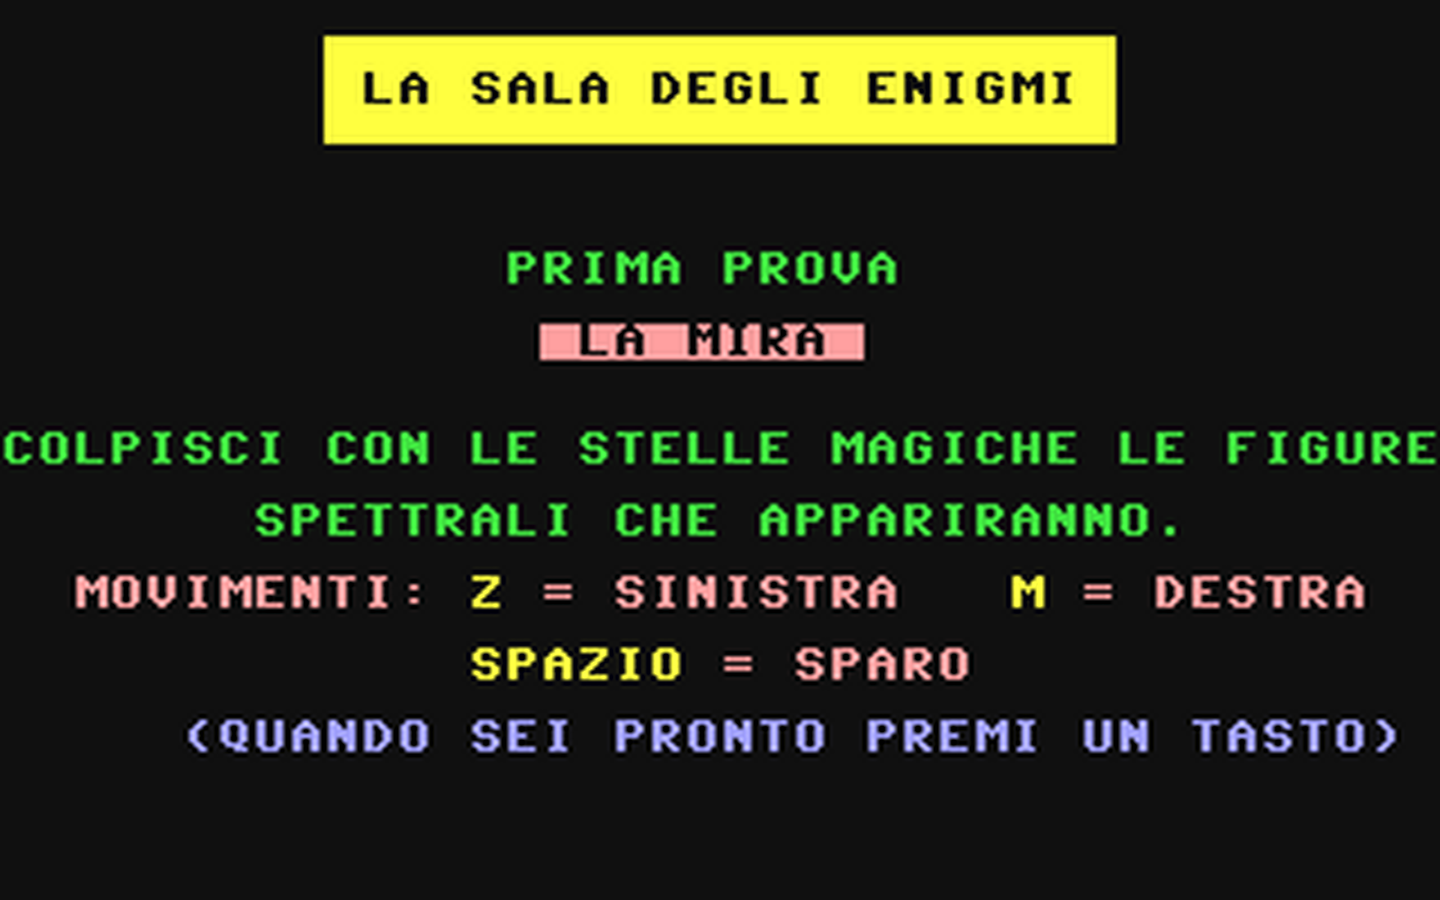 C64 GameBase Sala_Degli_Enigmi,_La Edizione_Logica_2000/Videoteca_Computer 1985